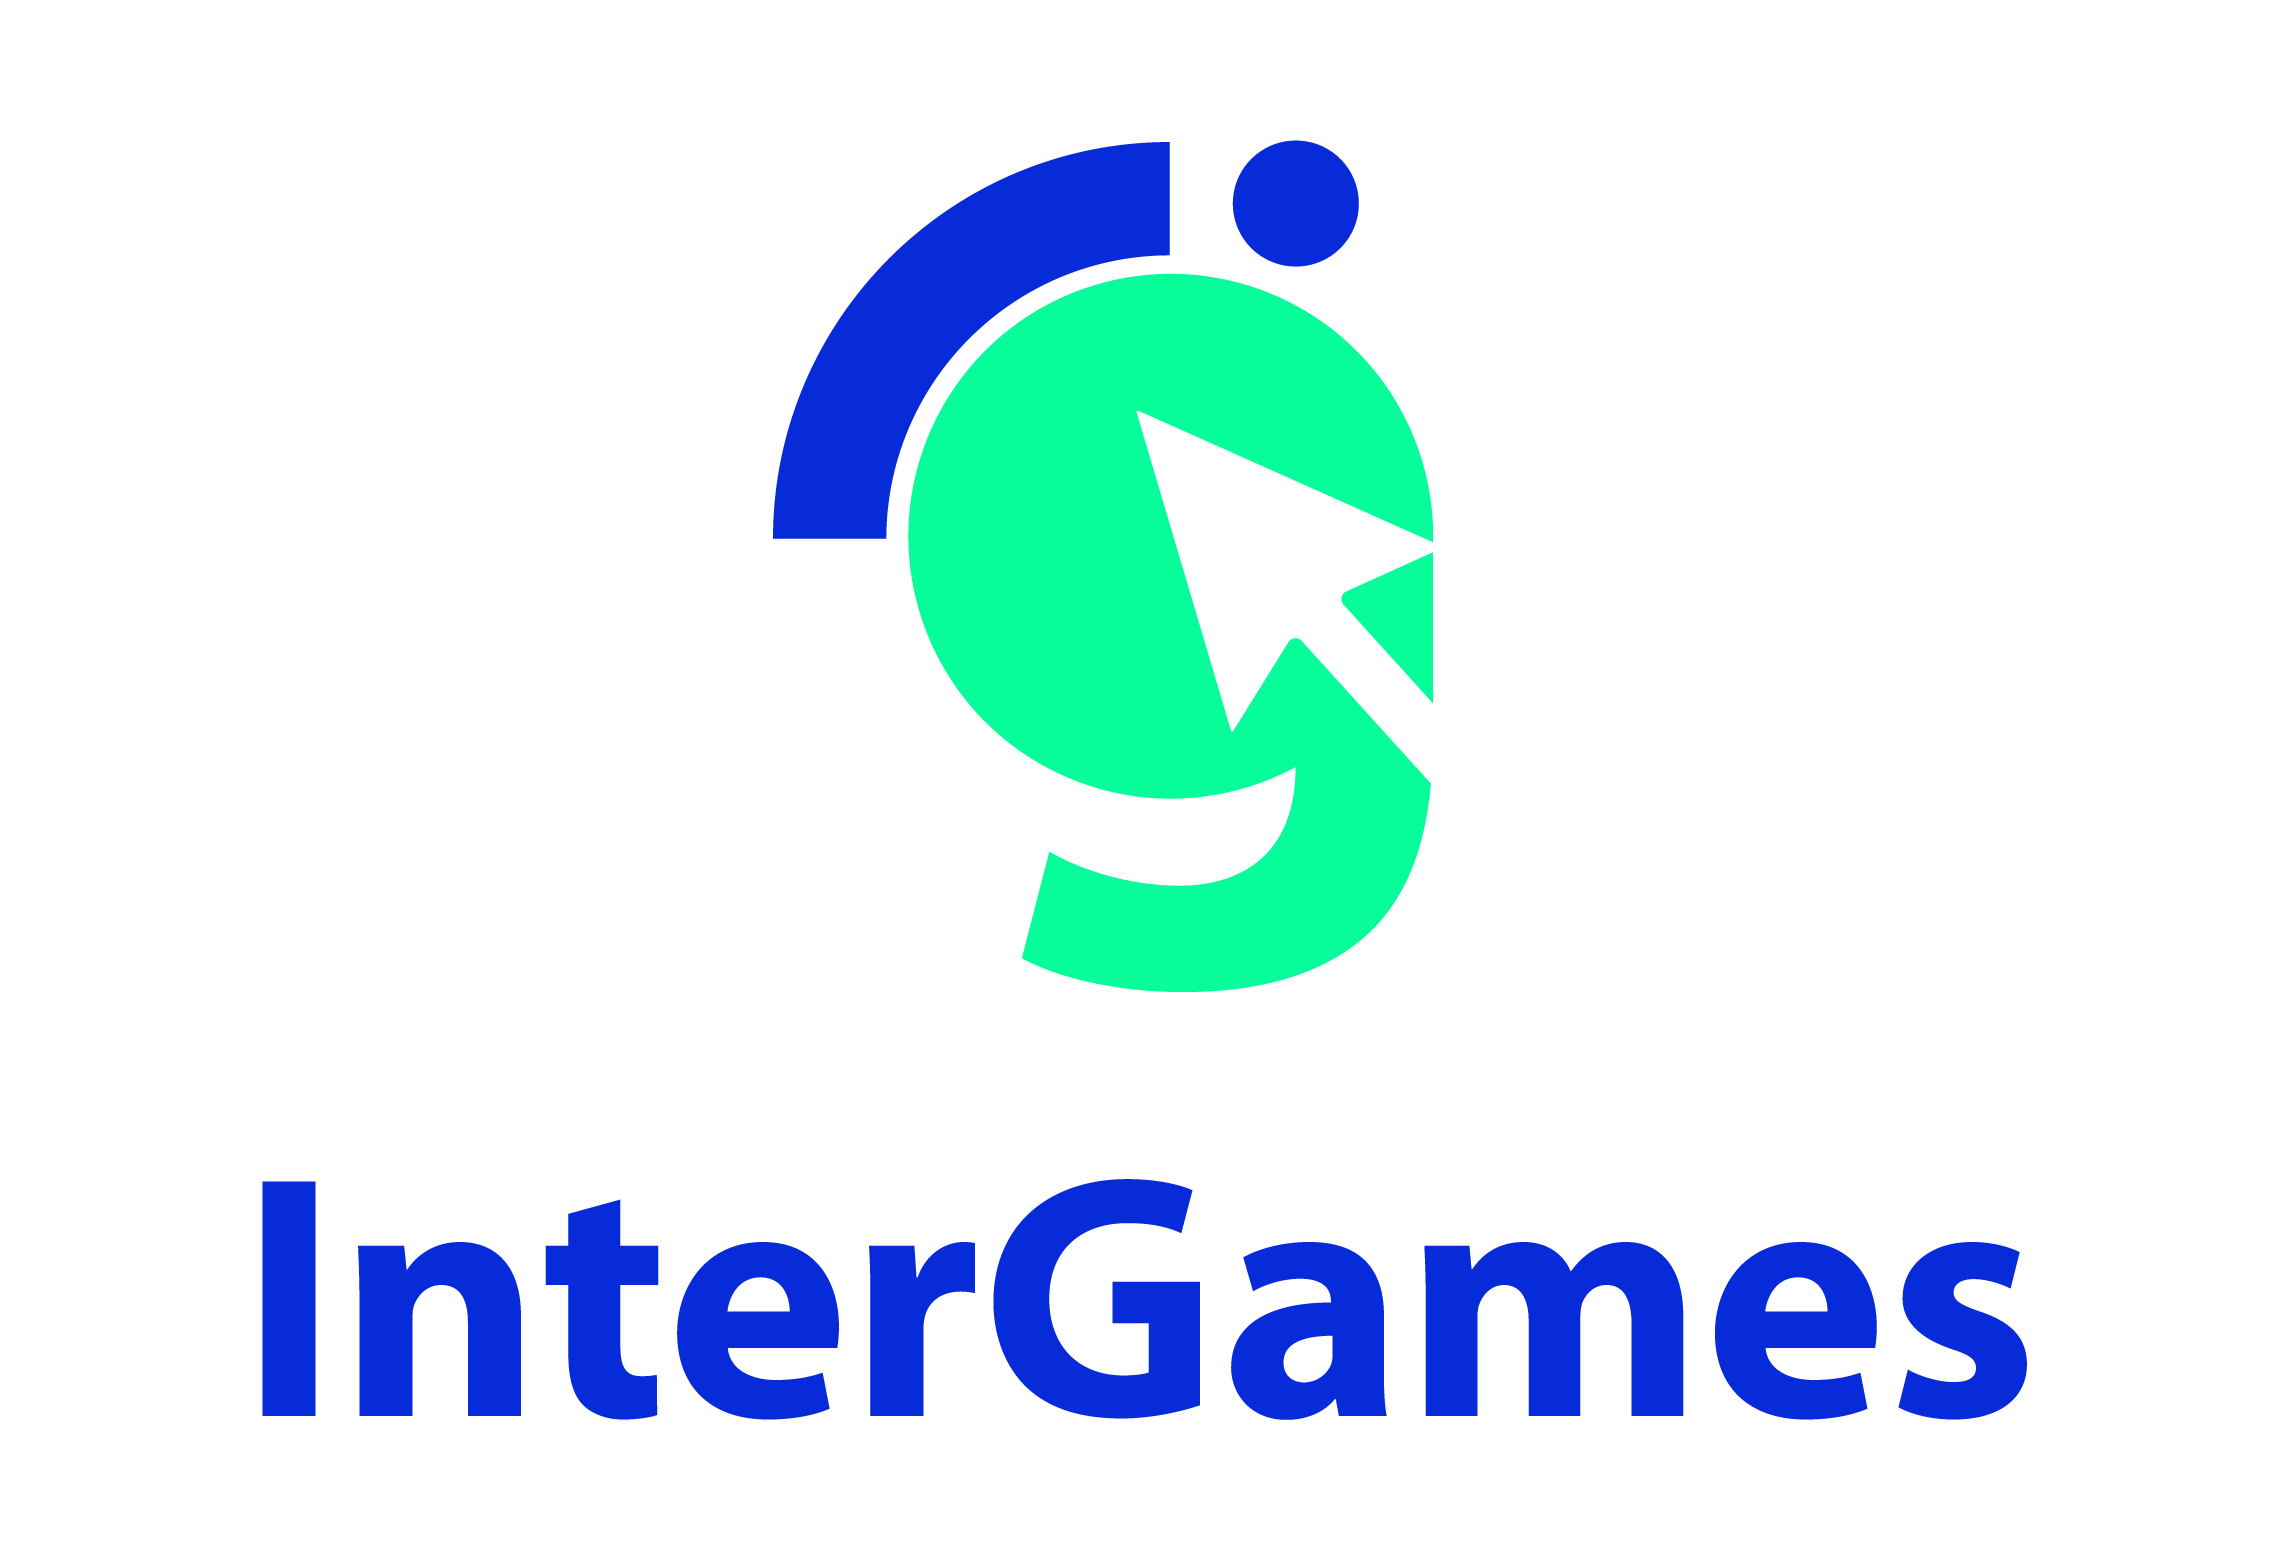 InterGames